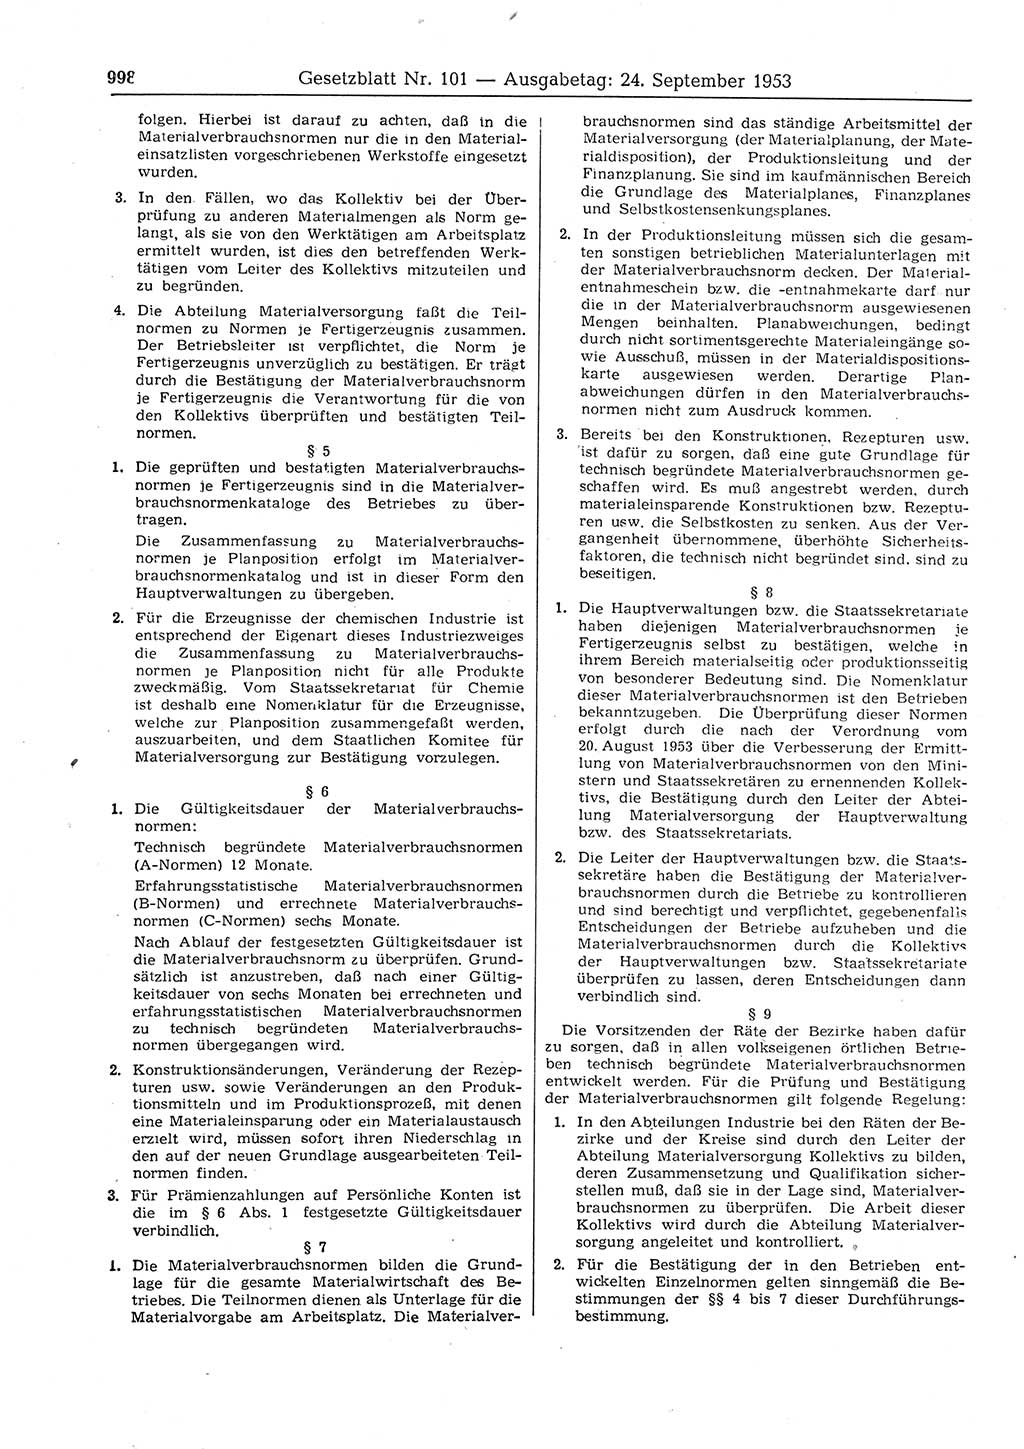 Gesetzblatt (GBl.) der Deutschen Demokratischen Republik (DDR) 1953, Seite 998 (GBl. DDR 1953, S. 998)